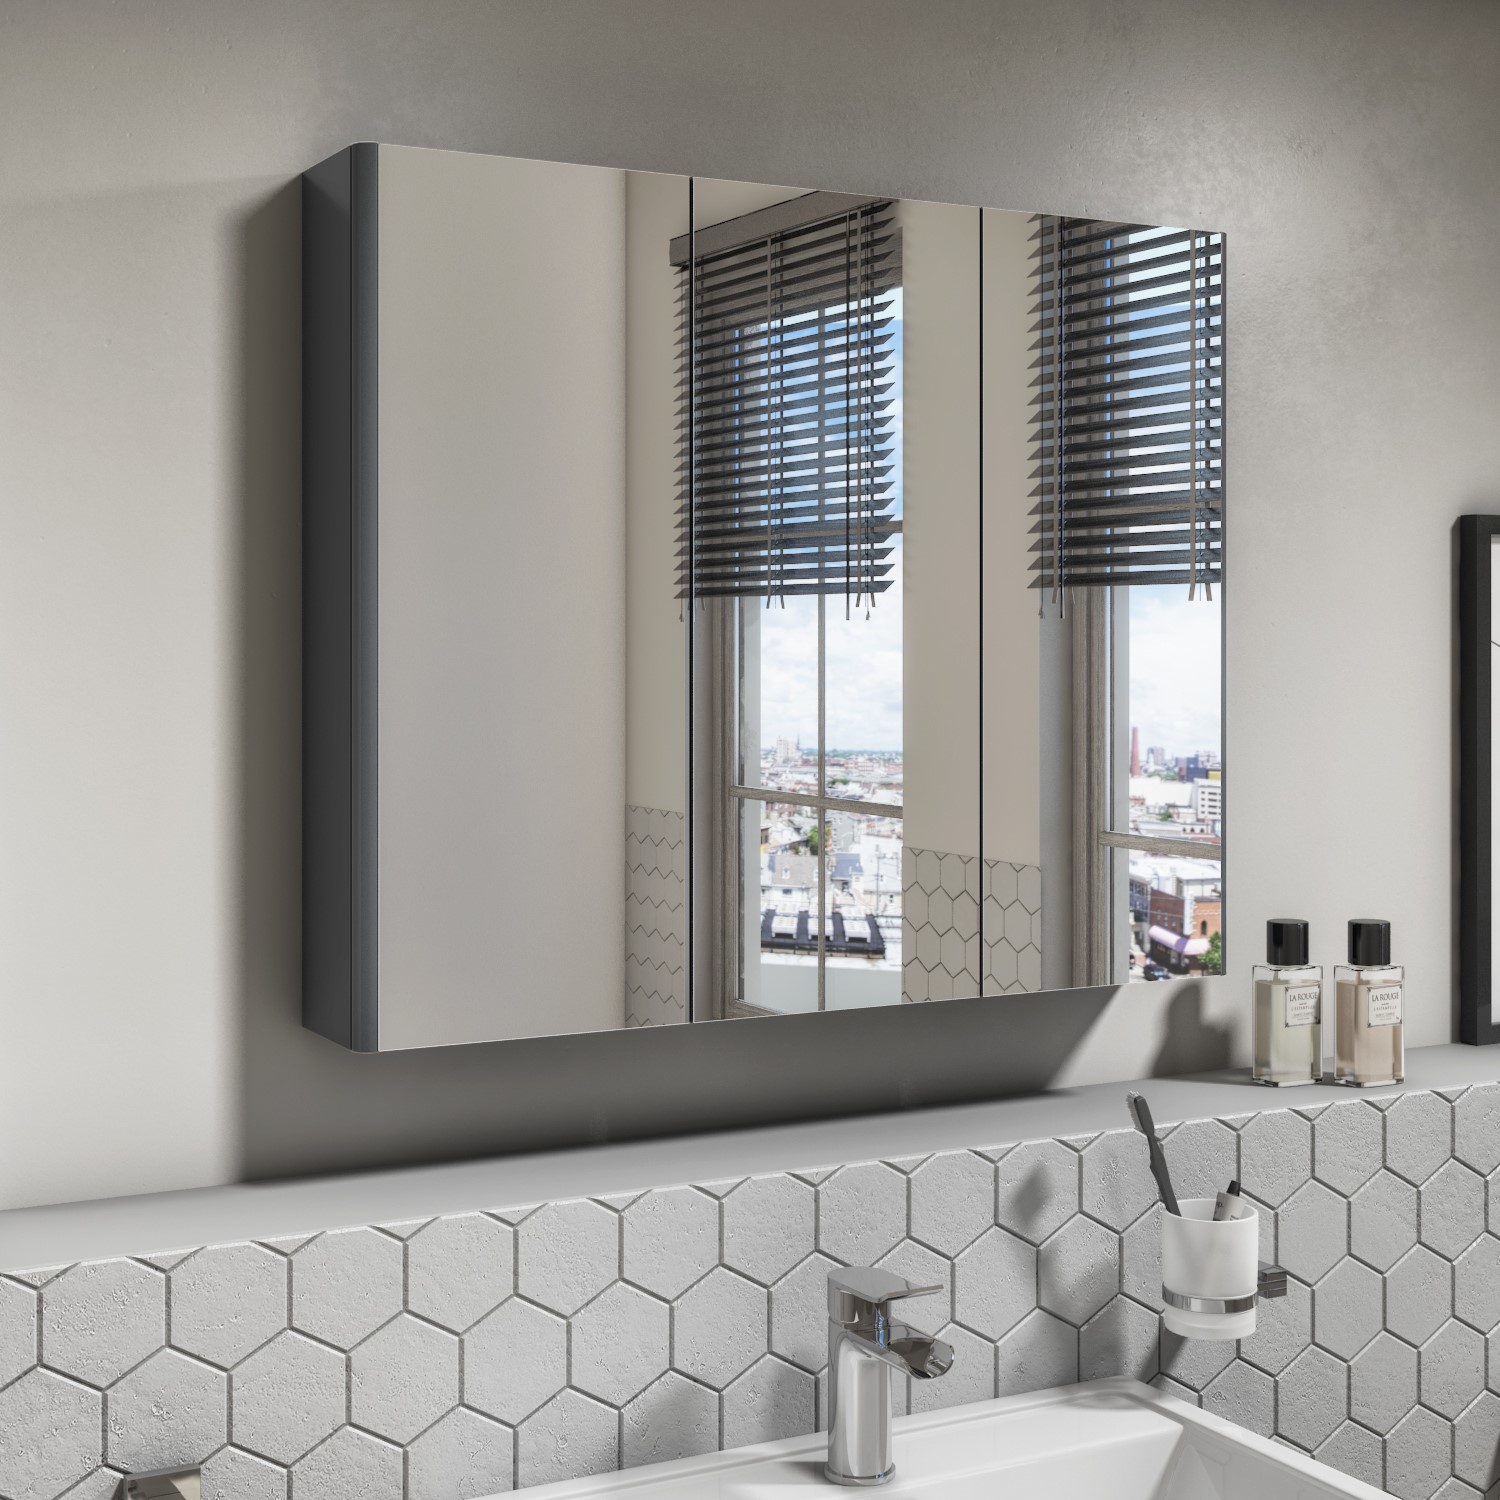 800mm Dark Grey Gloss Wall Hung Mirrored 3 Door Bathroom Cabinet Portland Better Bathrooms - Wall Mounted Bathroom Cabinets Mirror